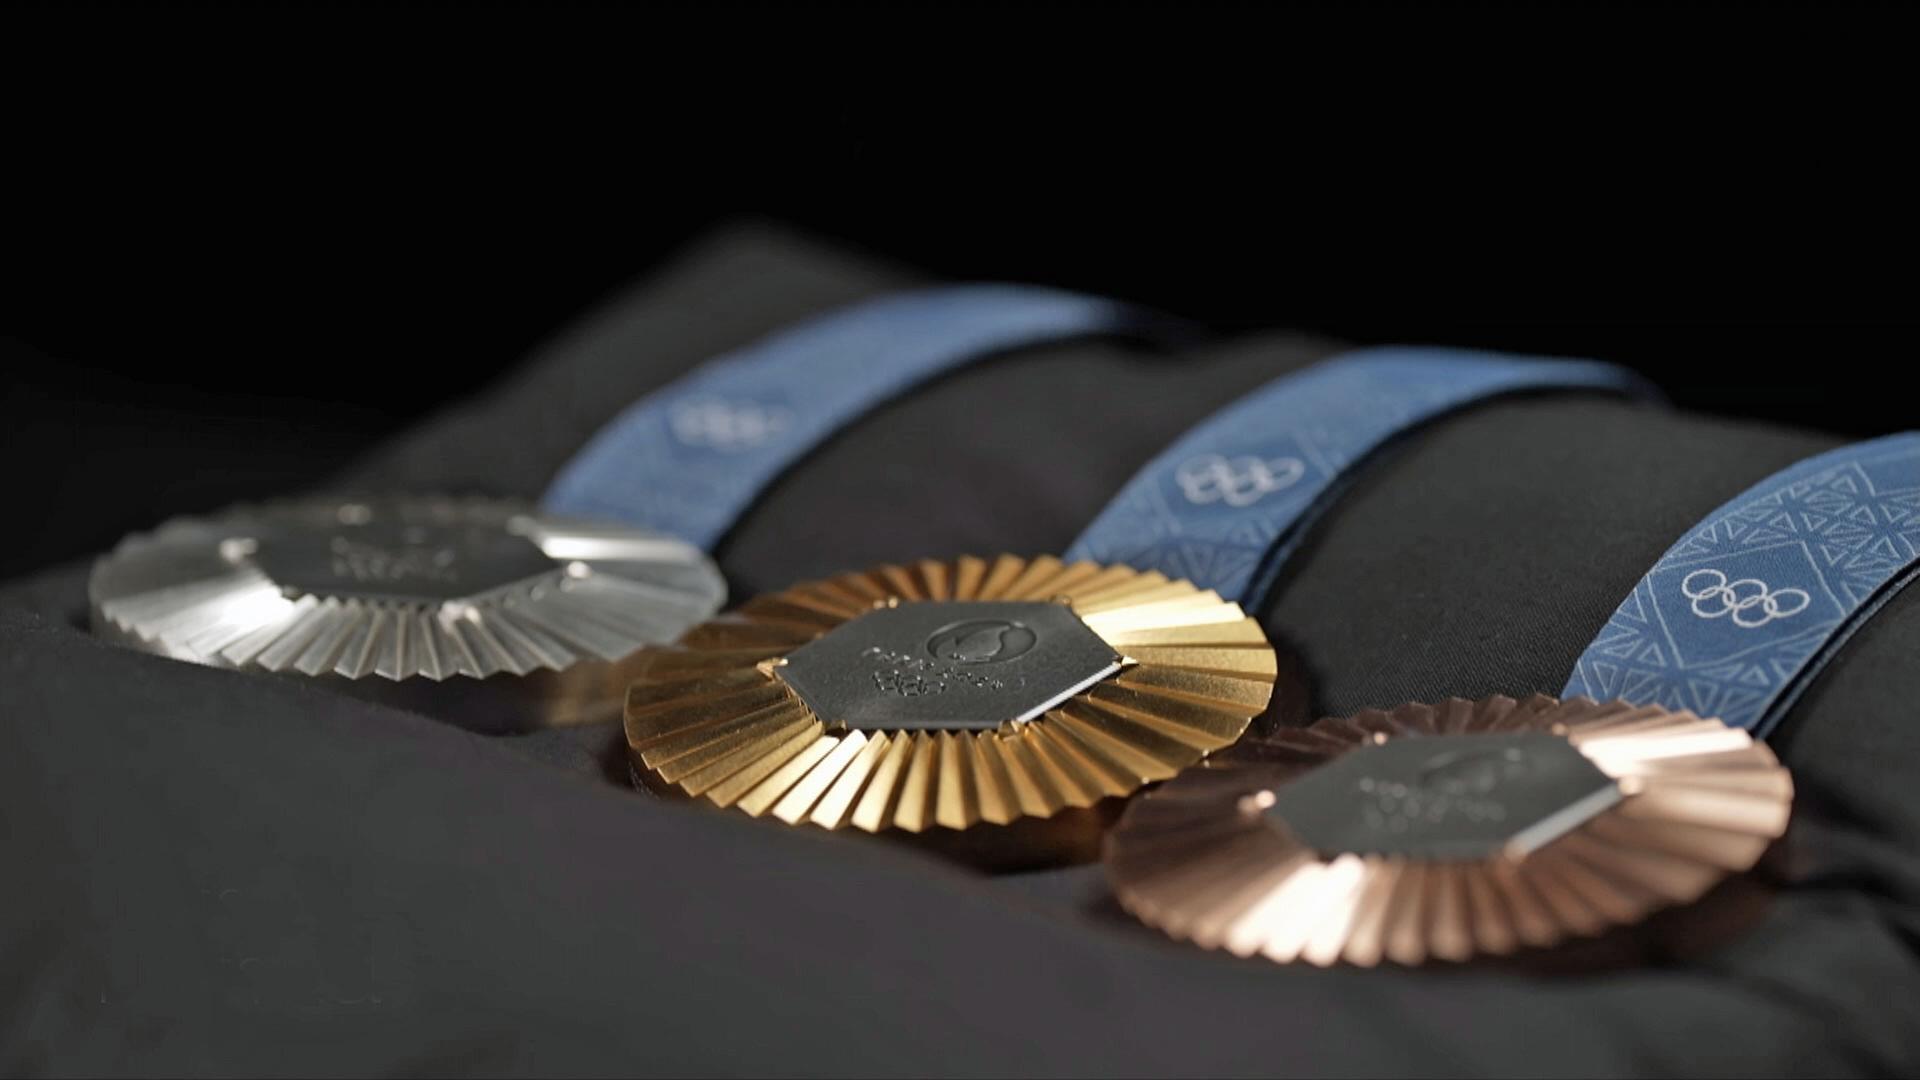 Olympia-Medaillen